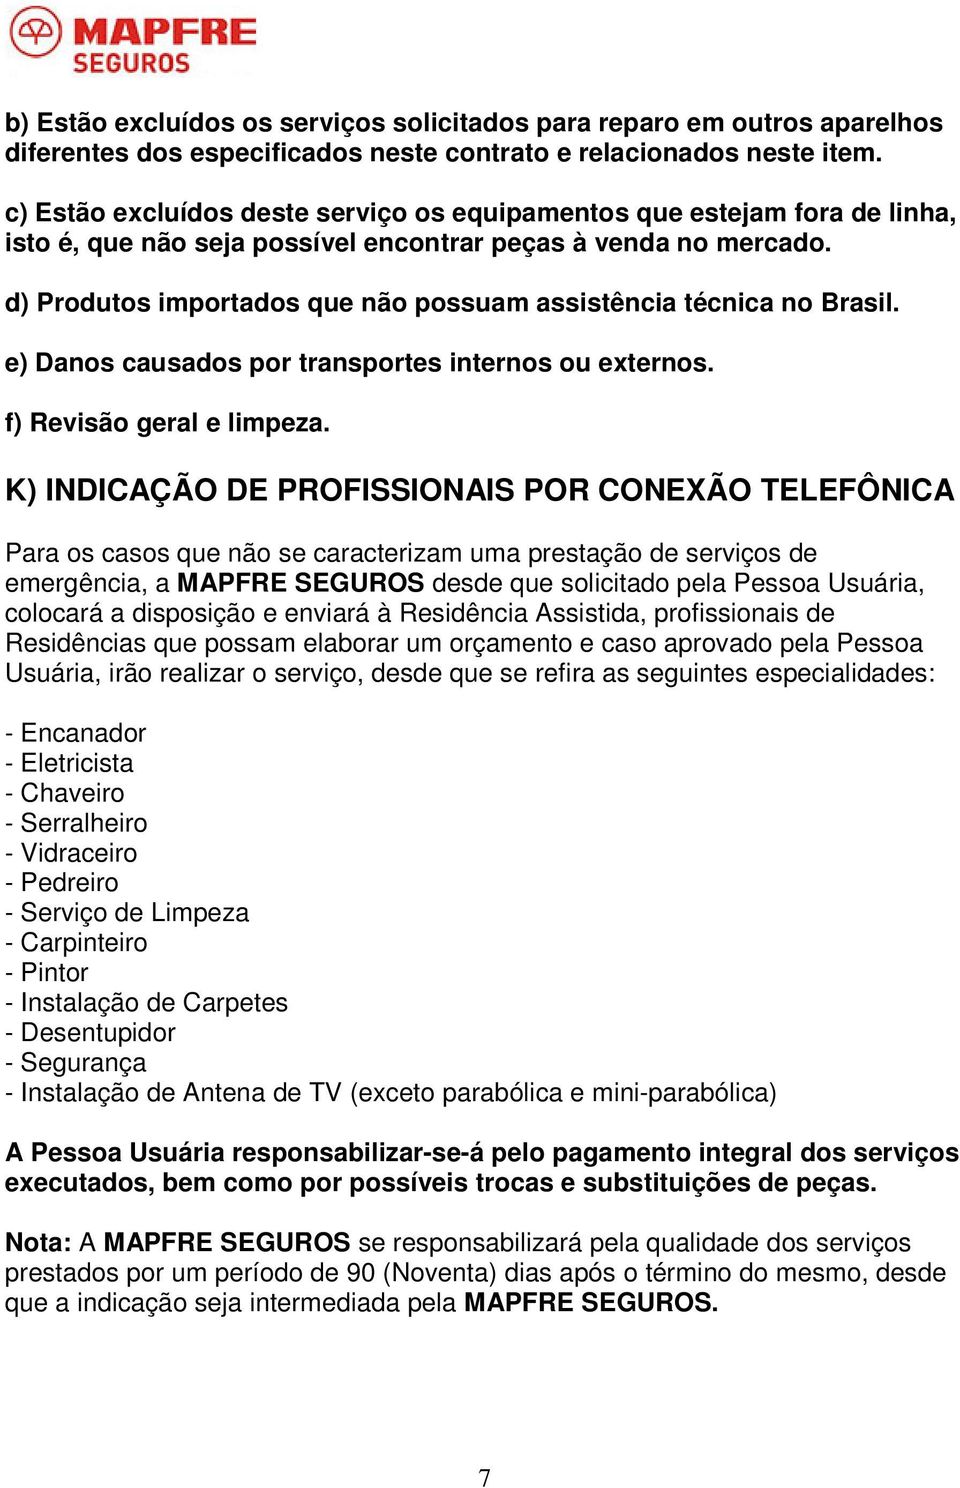 d) Produtos importados que não possuam assistência técnica no Brasil. e) Danos causados por transportes internos ou externos. f) Revisão geral e limpeza.